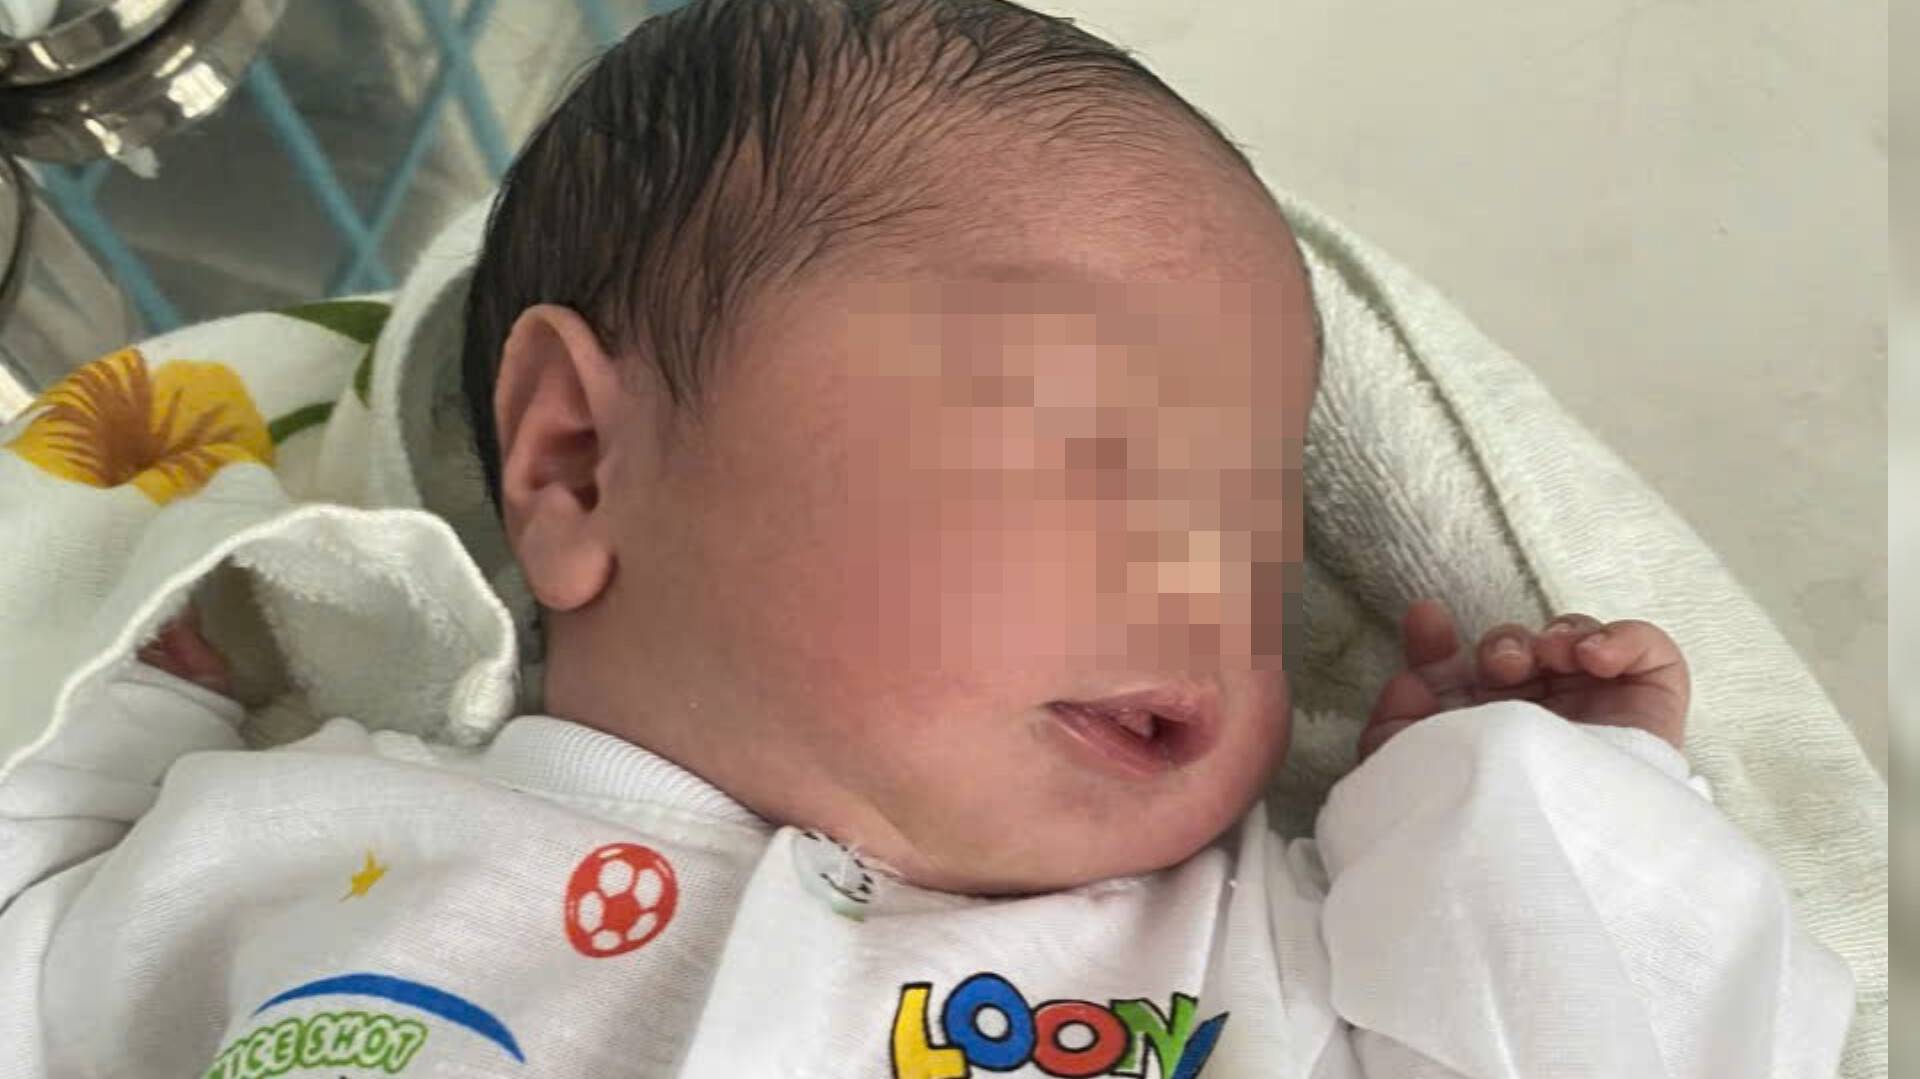 Một bé sơ sinh ở An Giang bị bỏ rơi dây rốn còn chưa cắt - Ảnh 1.